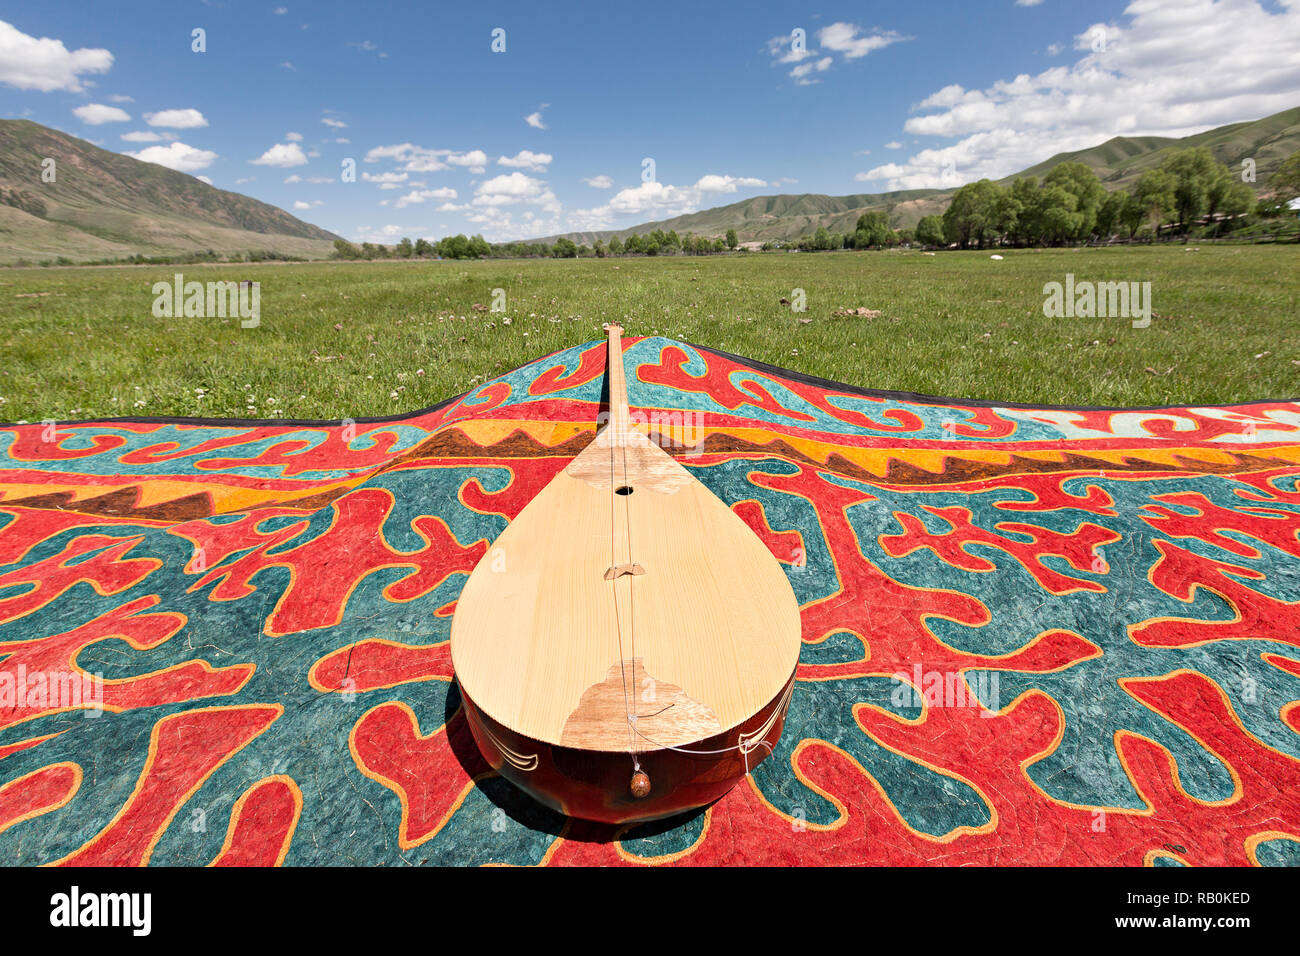 Instrument de musique nationale kazakhe appelée Dombra, au Kazakhstan. Banque D'Images